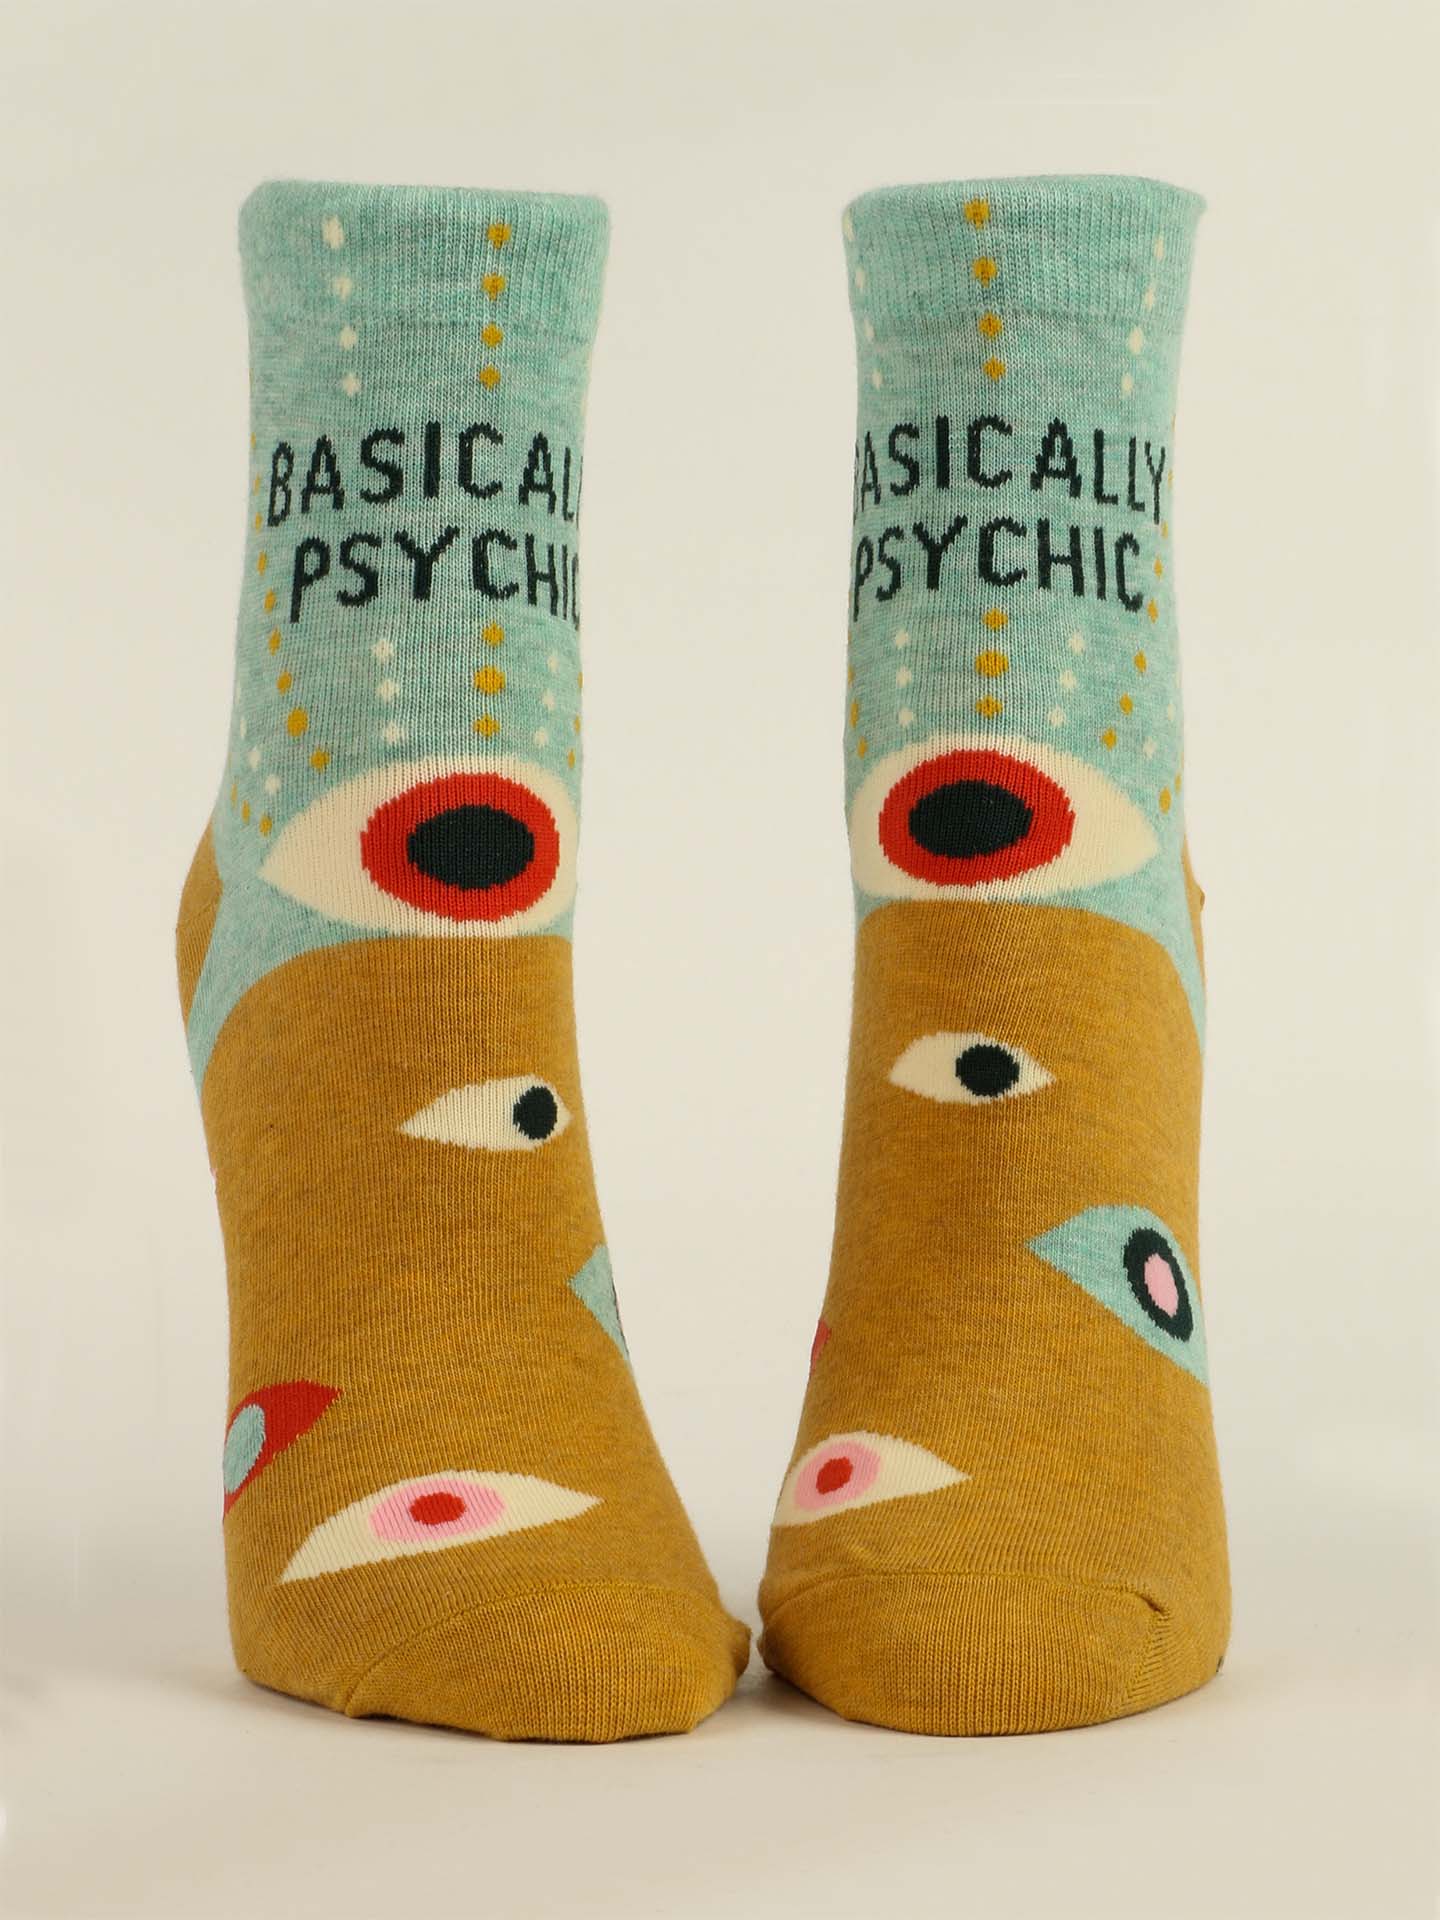 Blue Q Women's Ankle Socks - Basically Psychic    